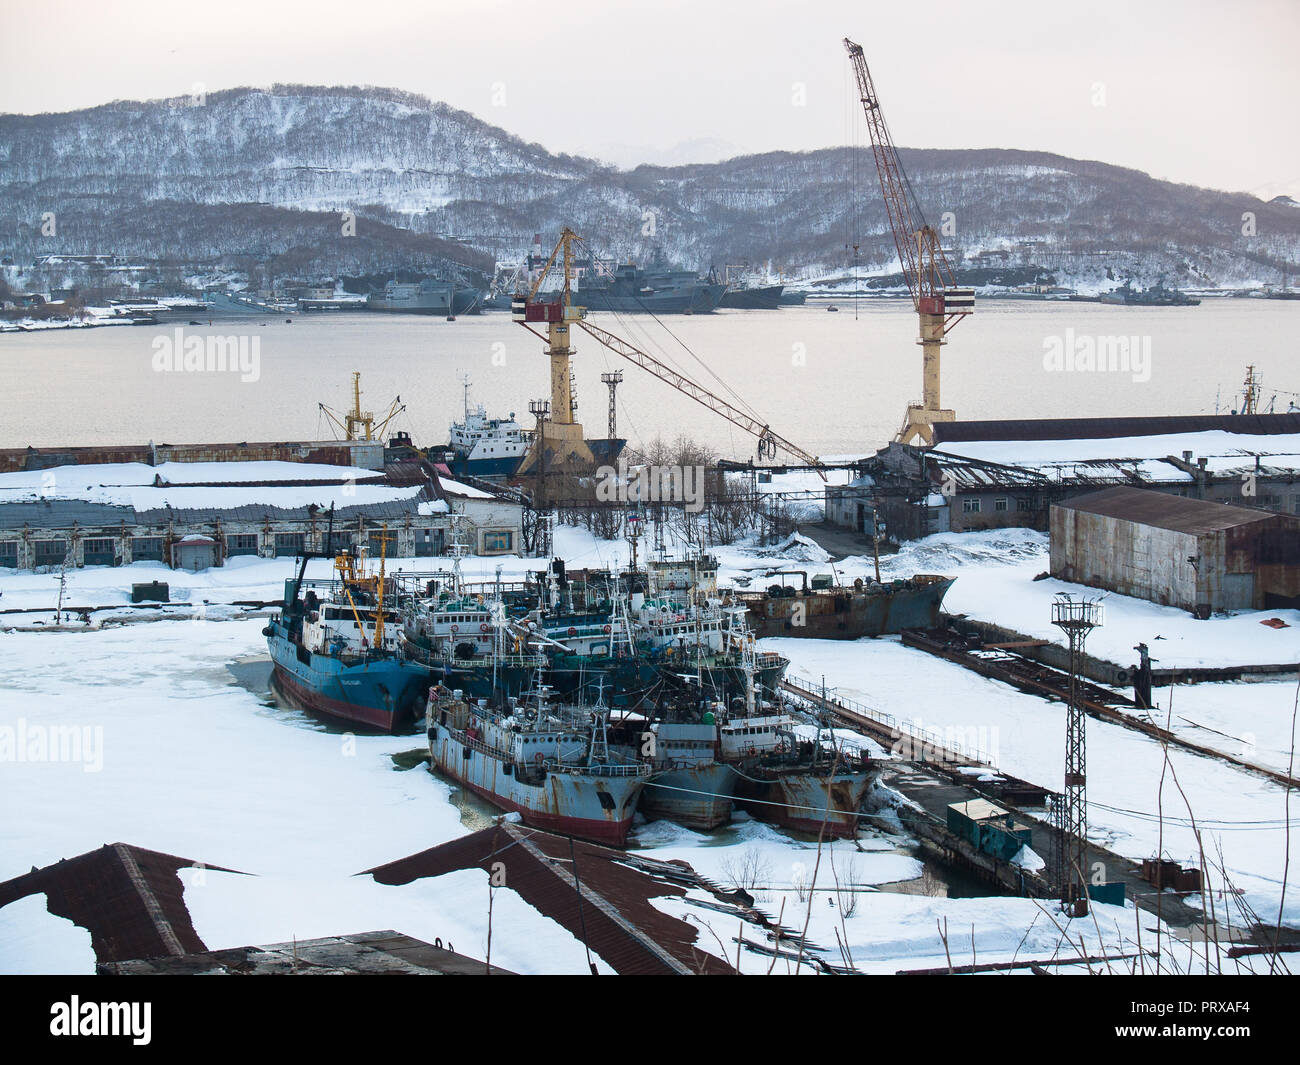 Dans le chantier naval docks il y a des bateaux de pêche pour les réparations près de la baie avec vue sur les collines en hiver à Yichun dans la soirée à Banque D'Images